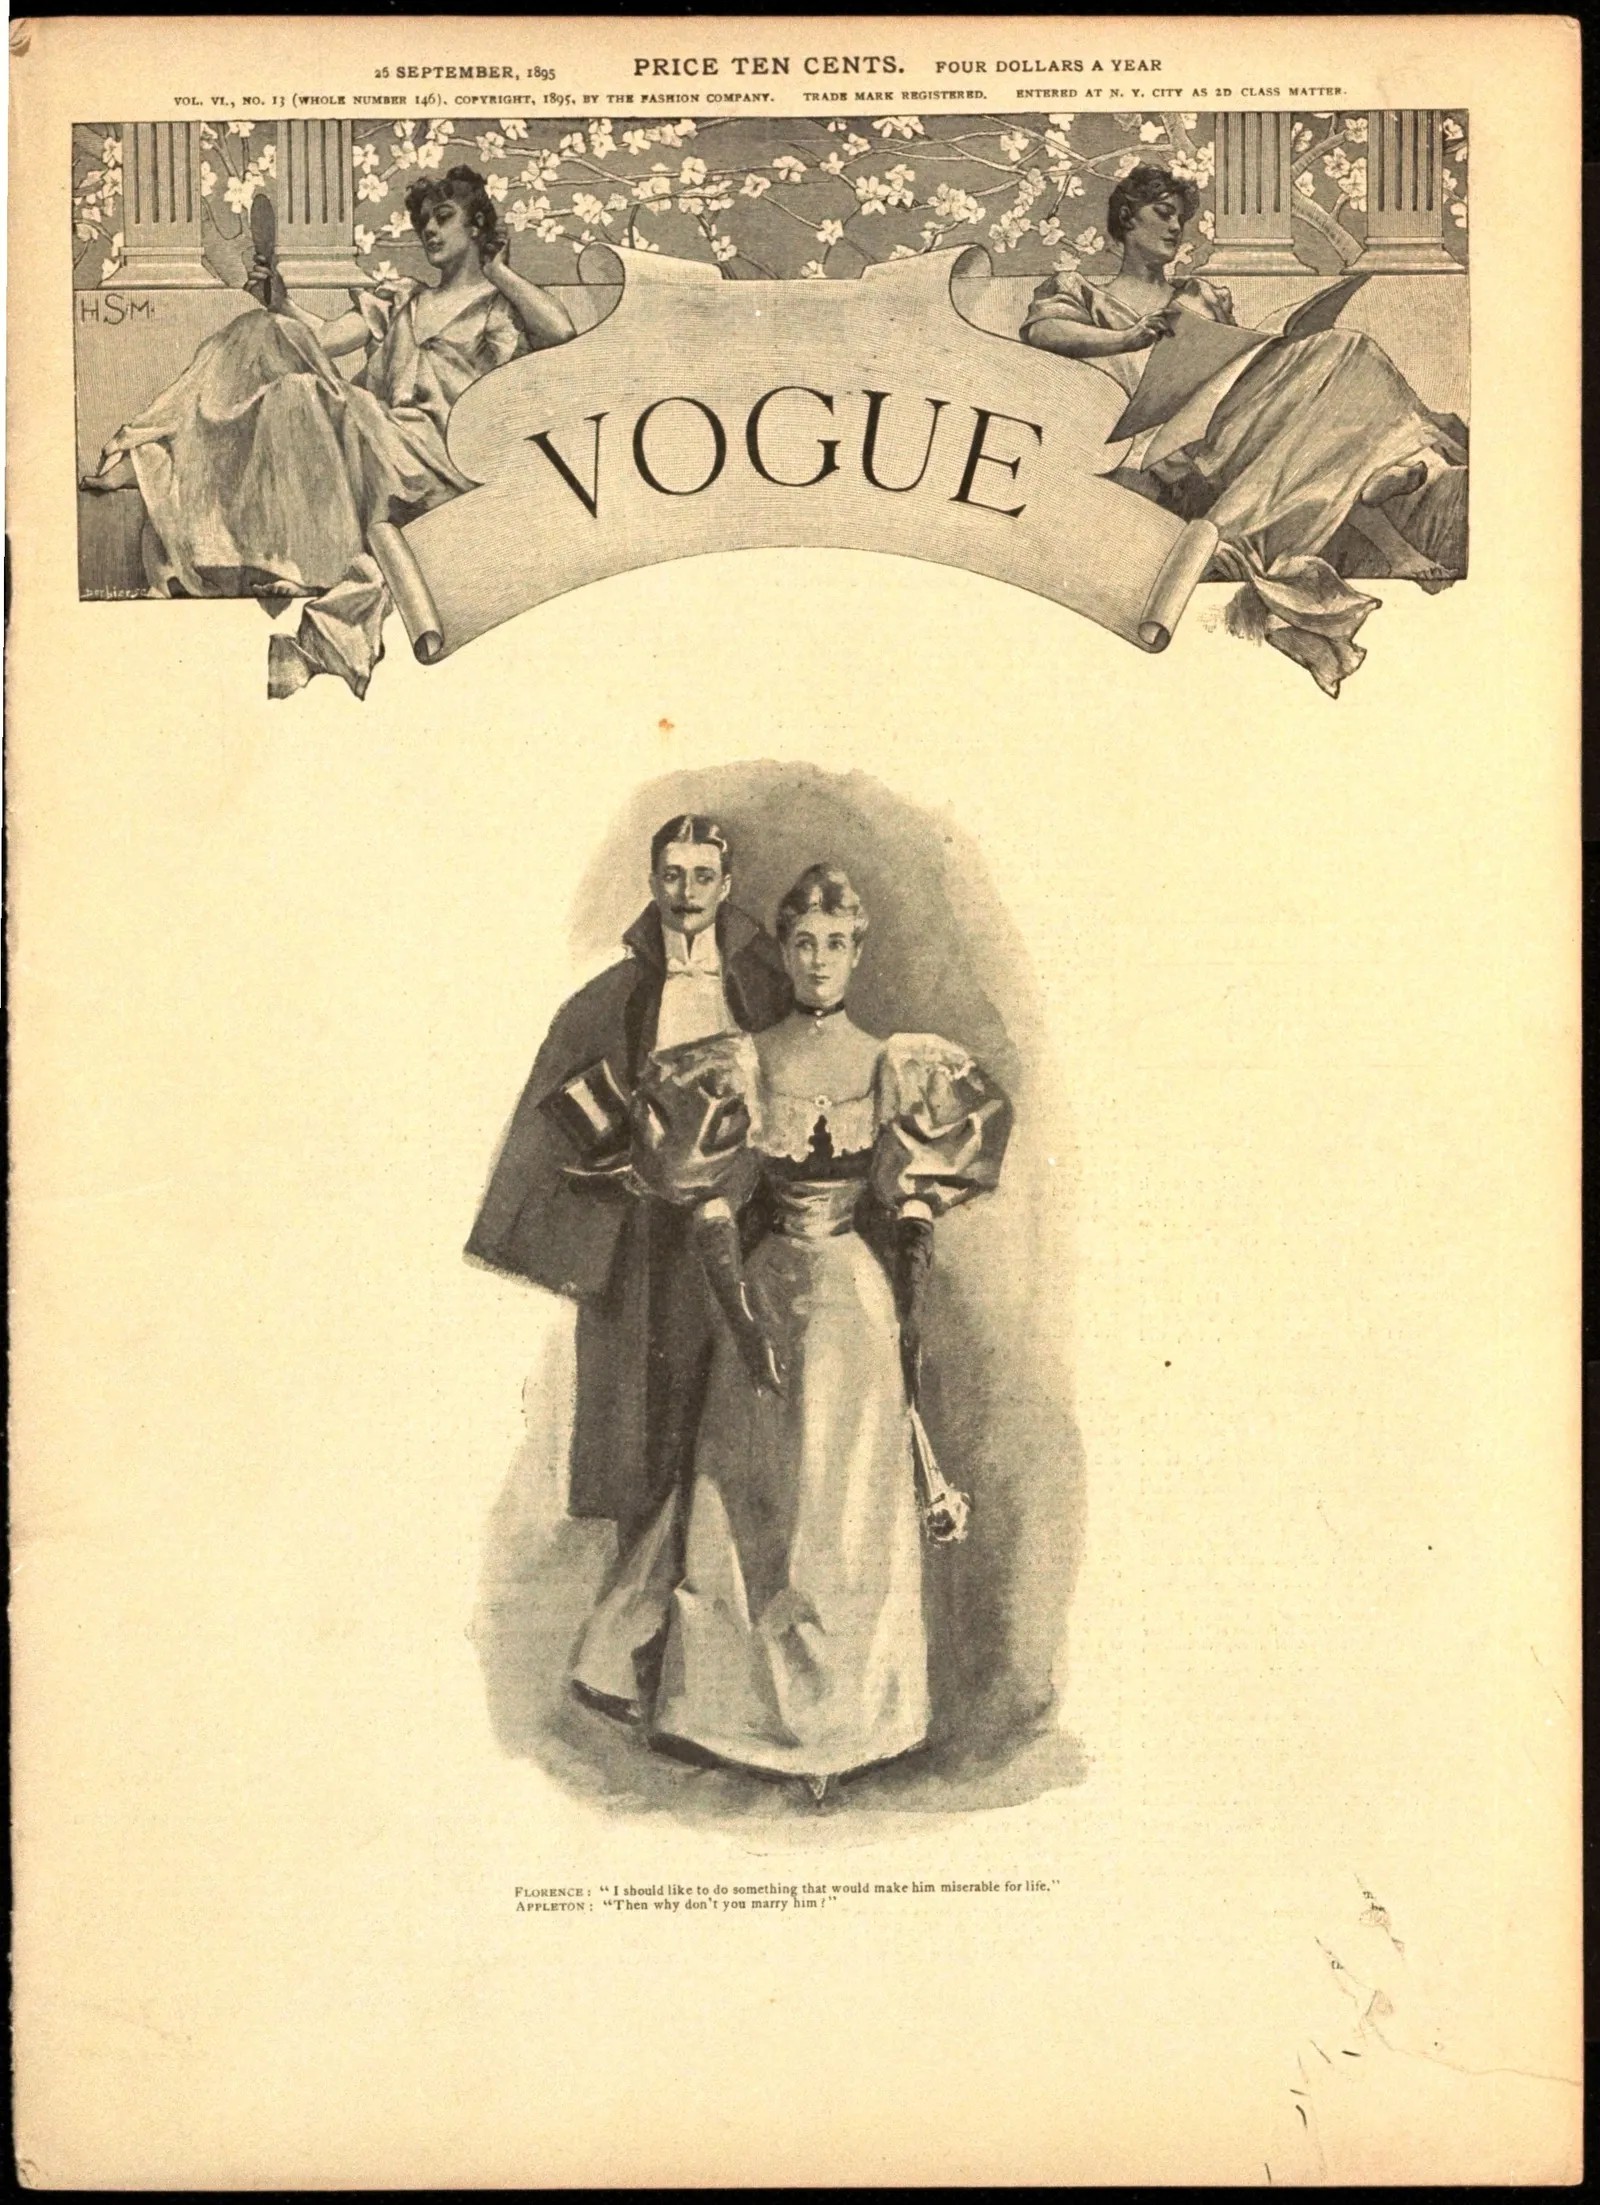 A edição de setembro de 1895 da Vogue, mostrando um casal vestido para uma noite formal (Foto: Cortesia do Arquivo Conde Nast)